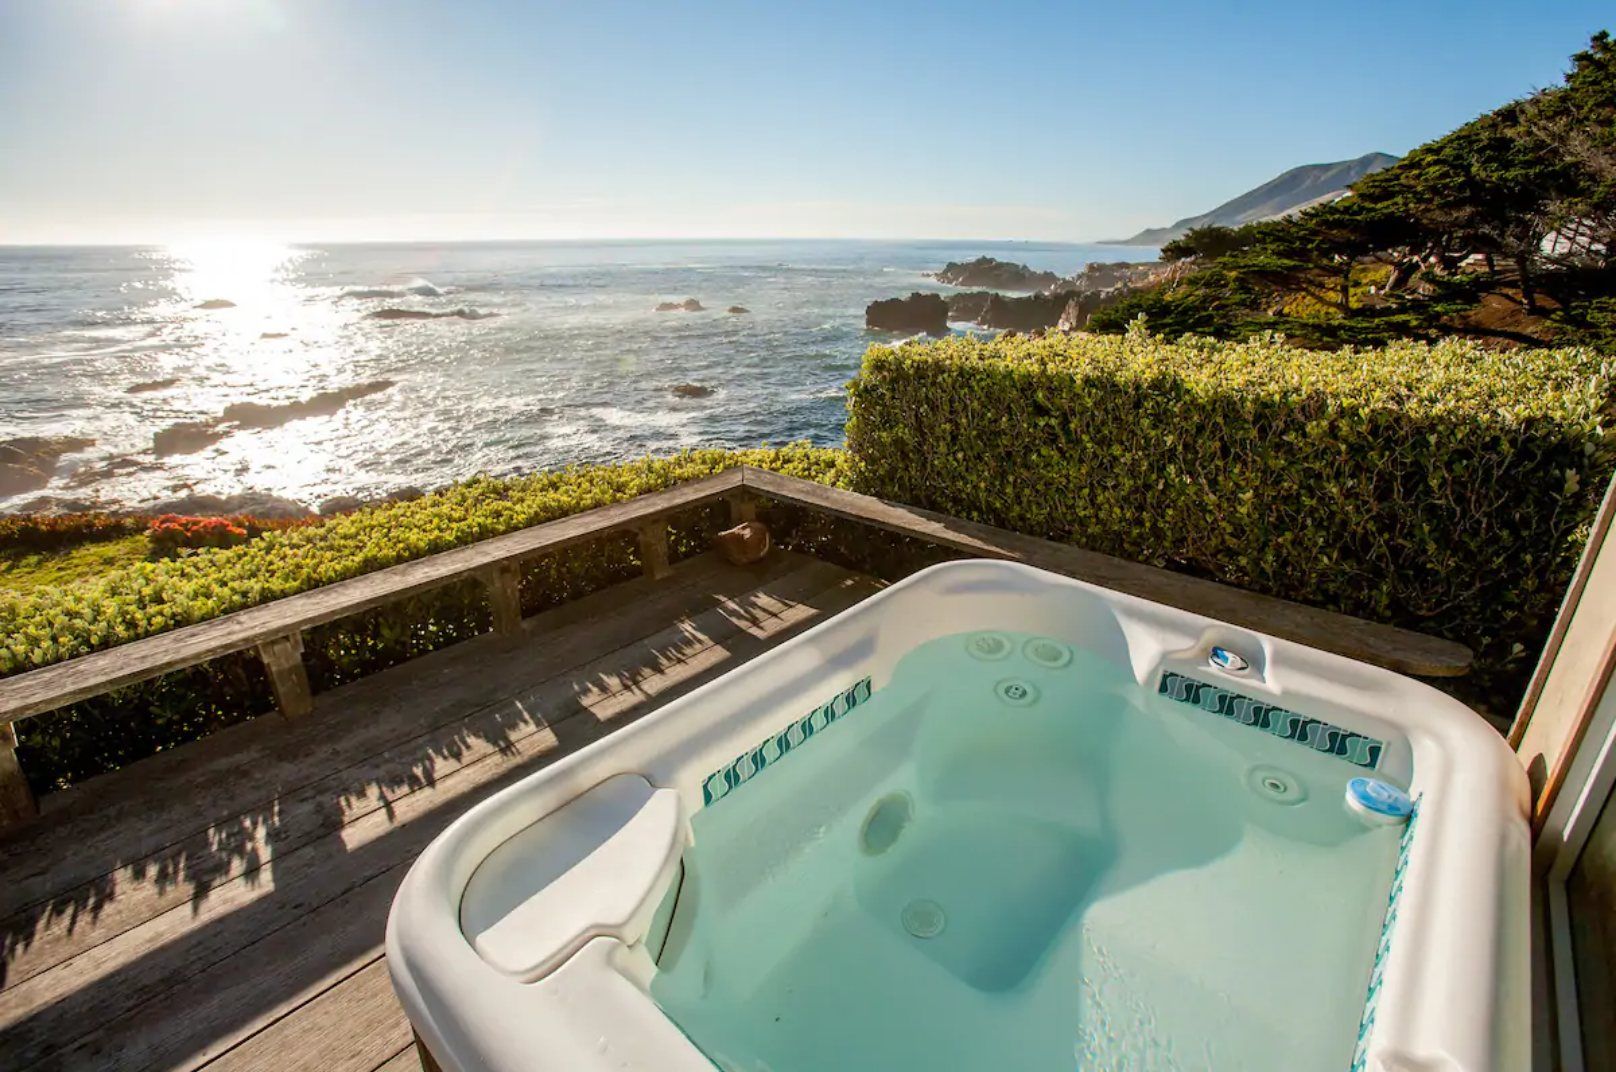 Monterey, Carmel & Big Sur Vacation Home Rentals